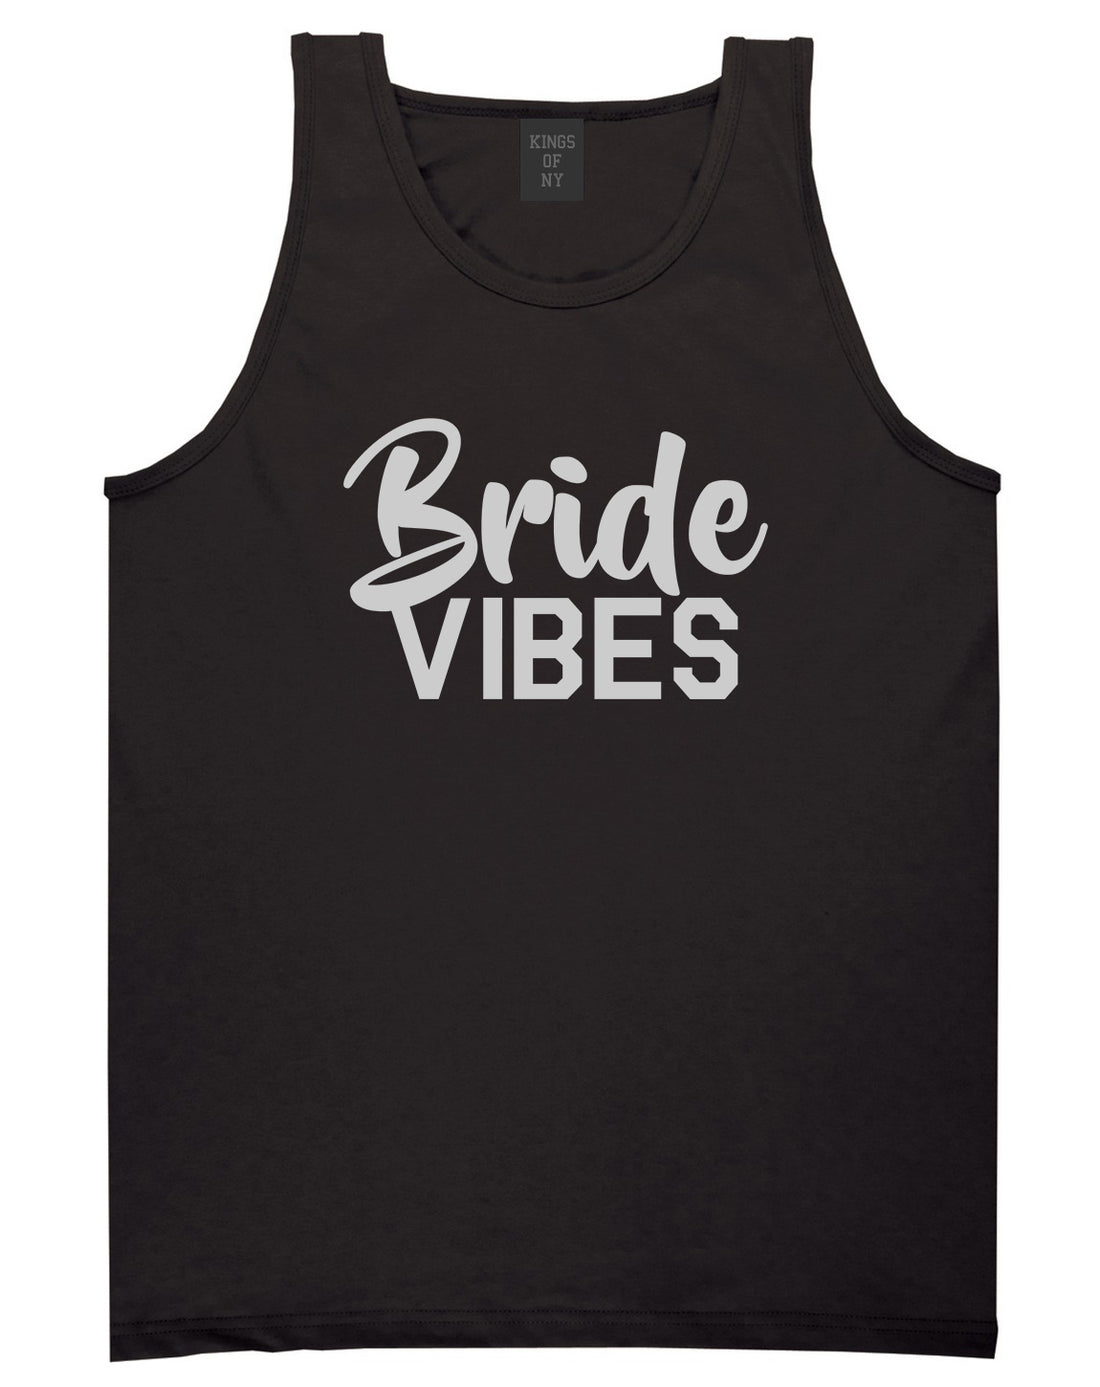 Bride Vibes Bridal Mens Black Tank Top Shirt by KINGS OF NY